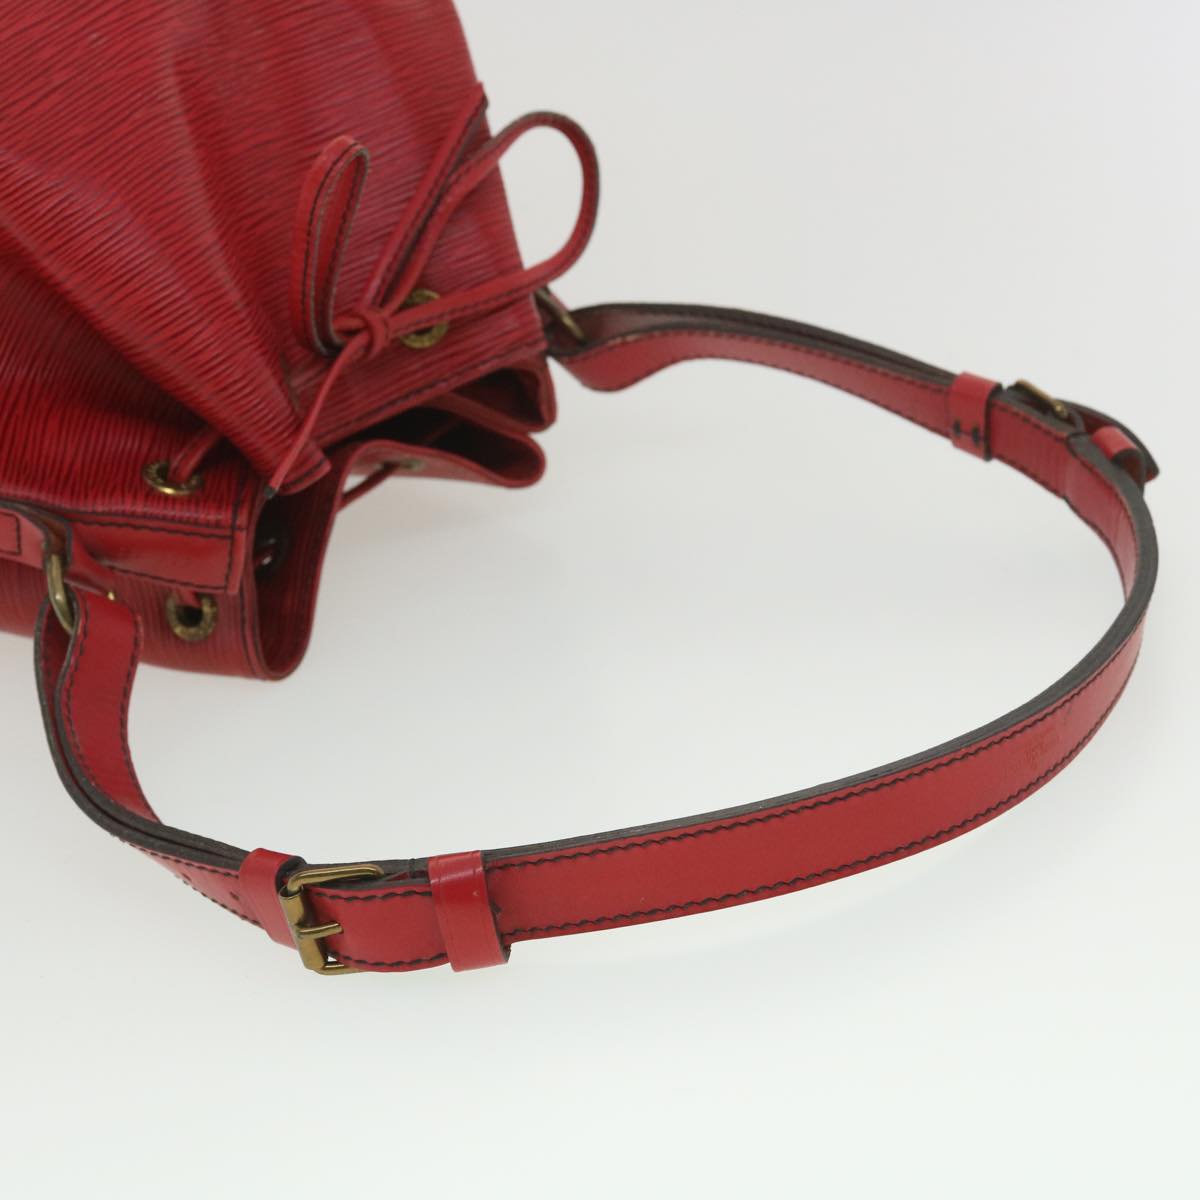 LOUIS VUITTON Epi Petit Noe Shoulder Bag Red M44107 LV Auth ac1880